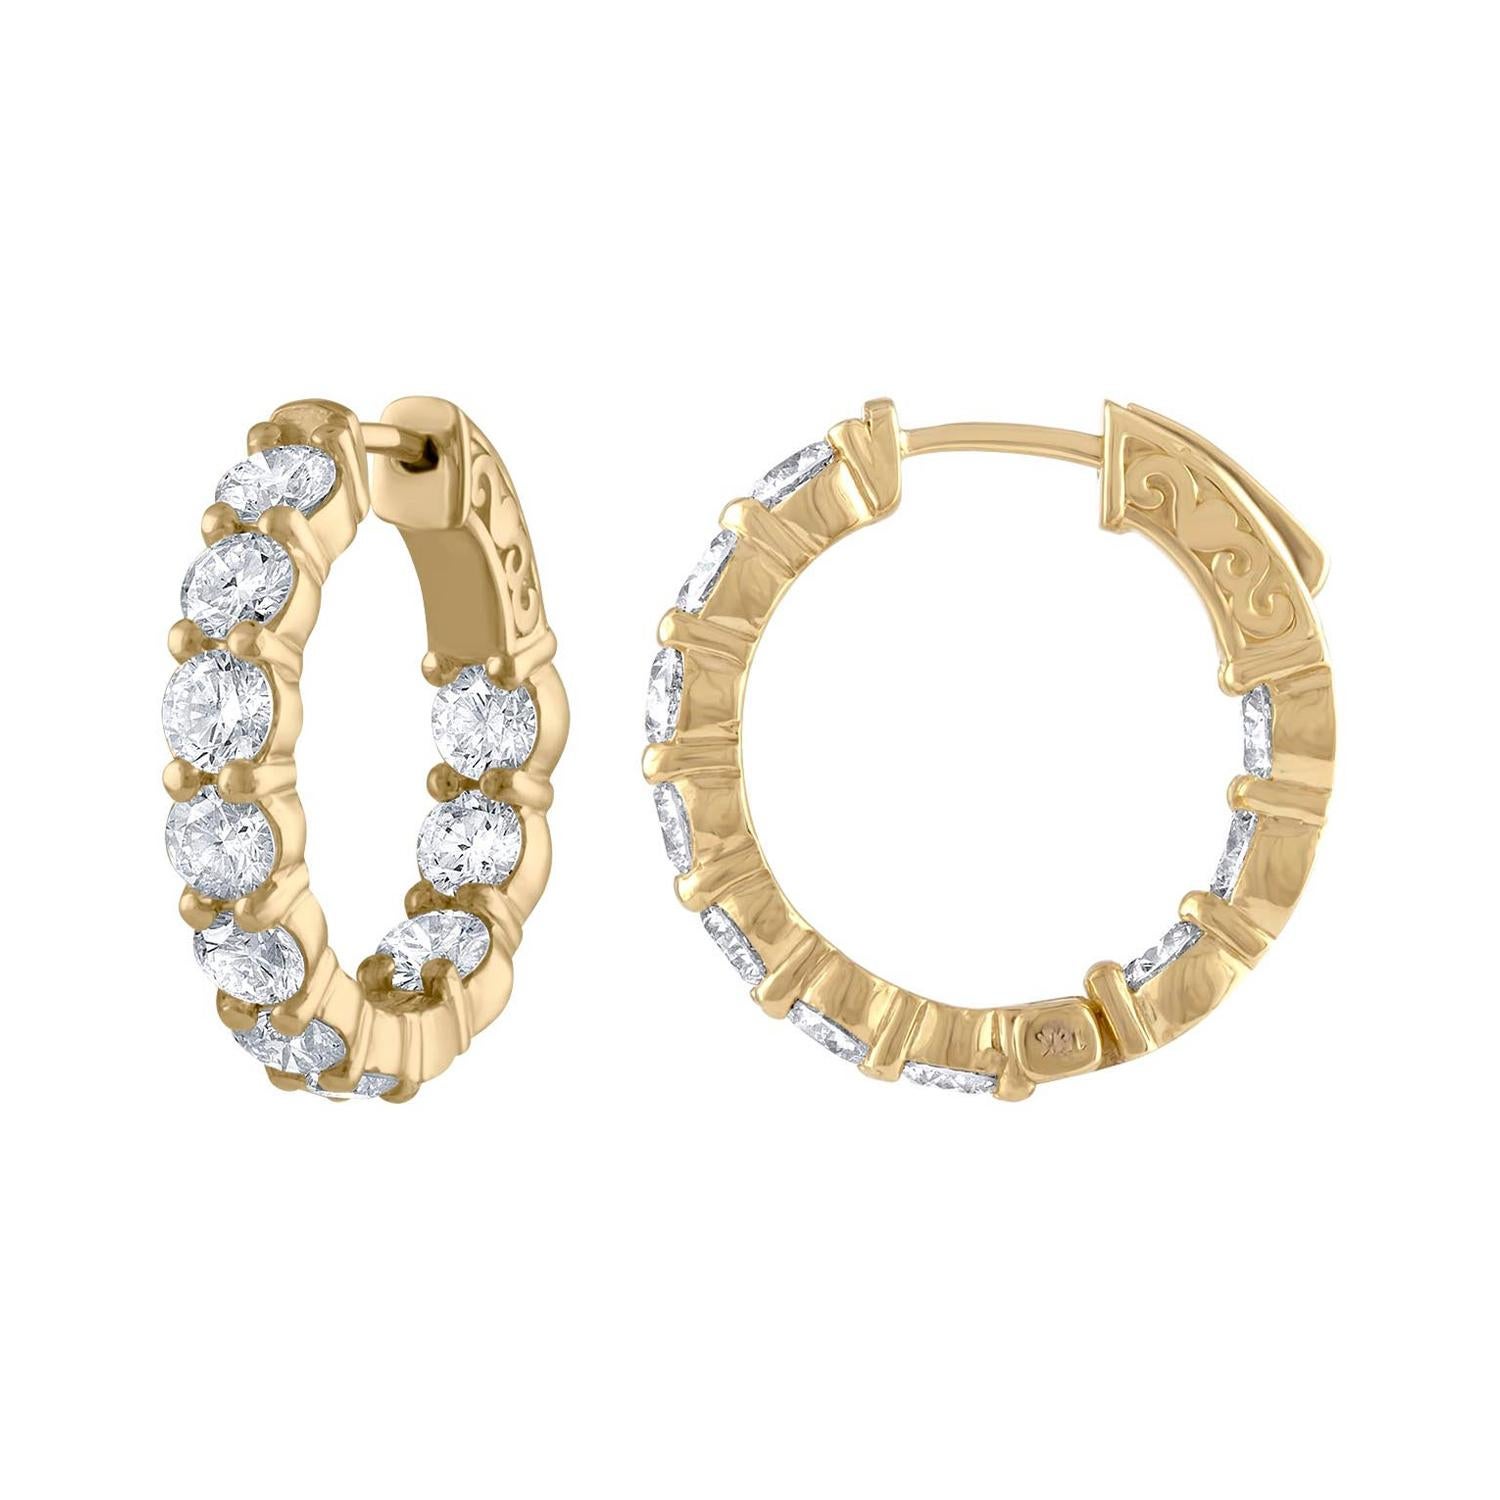 Diana M. Fine Jewelry 18k 4.10 Ct. tw. Diamond Hoop Earrings